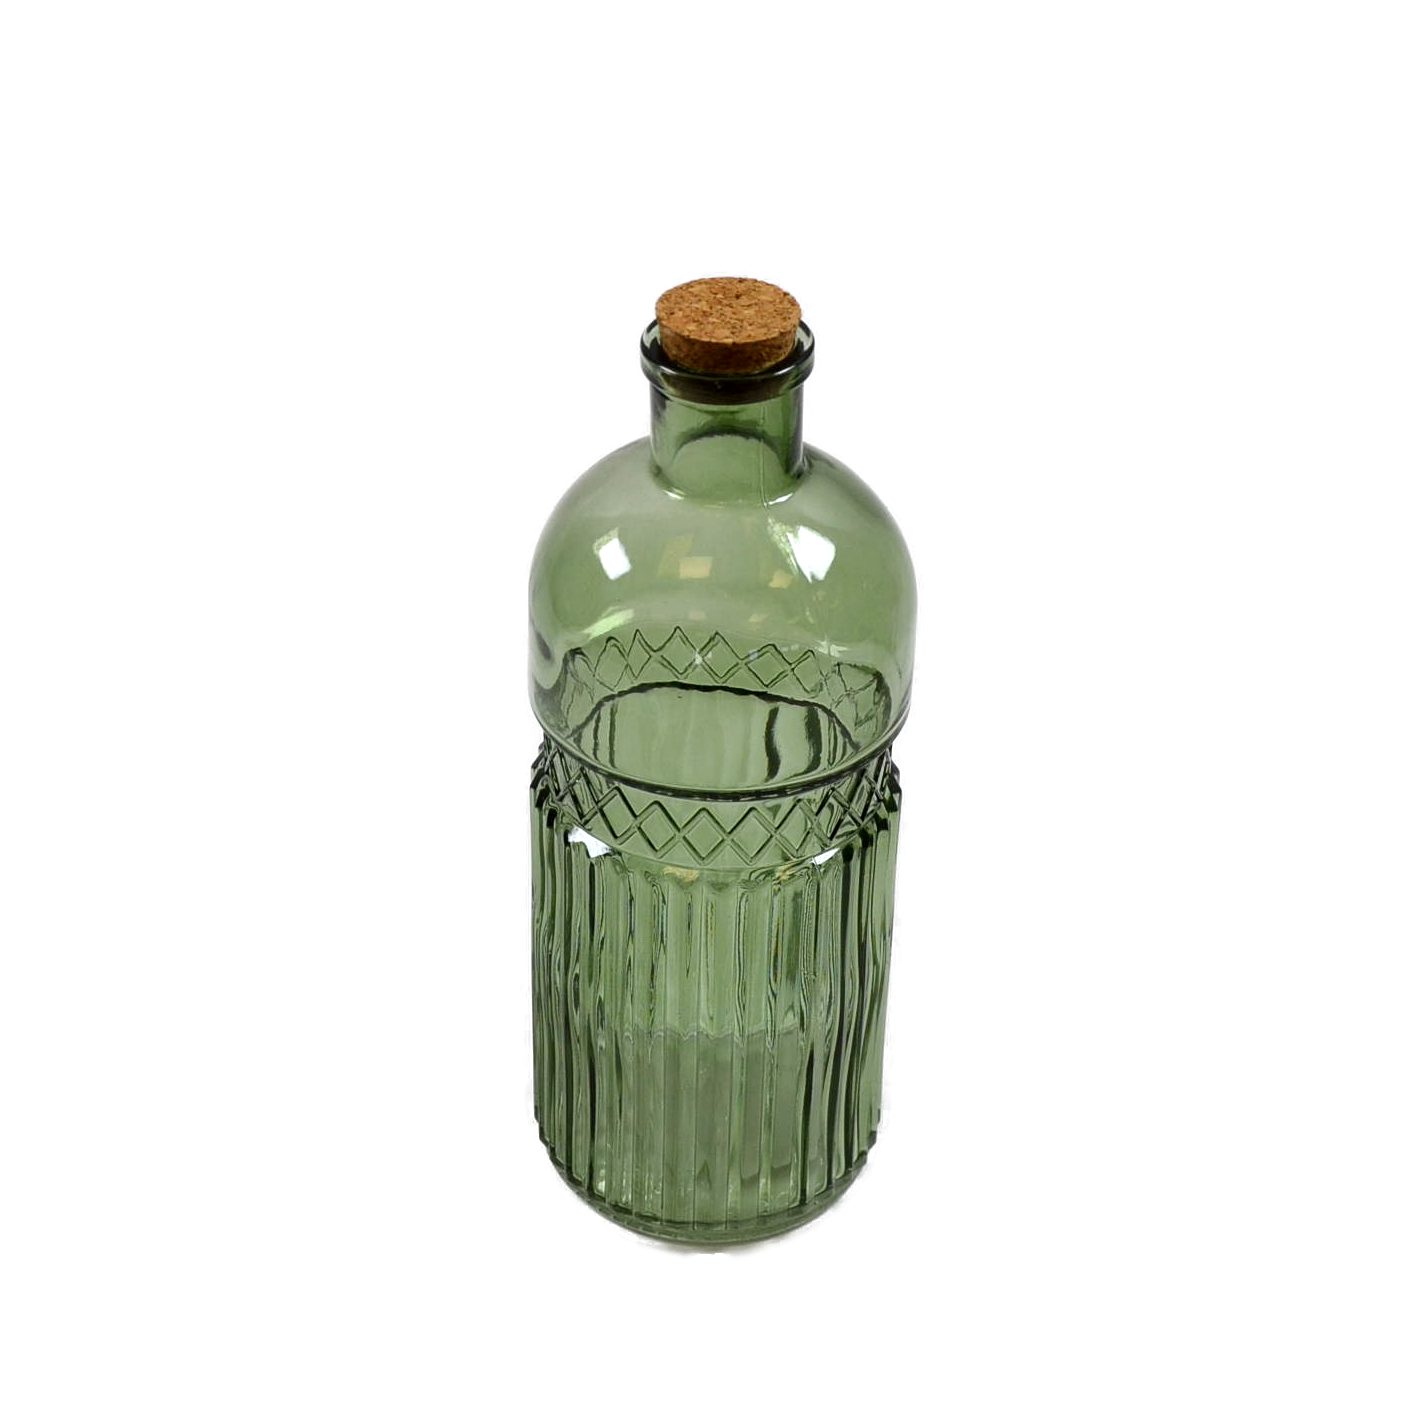 B&S Dekofigur Flasche grün Glas 9x24 cm Deko